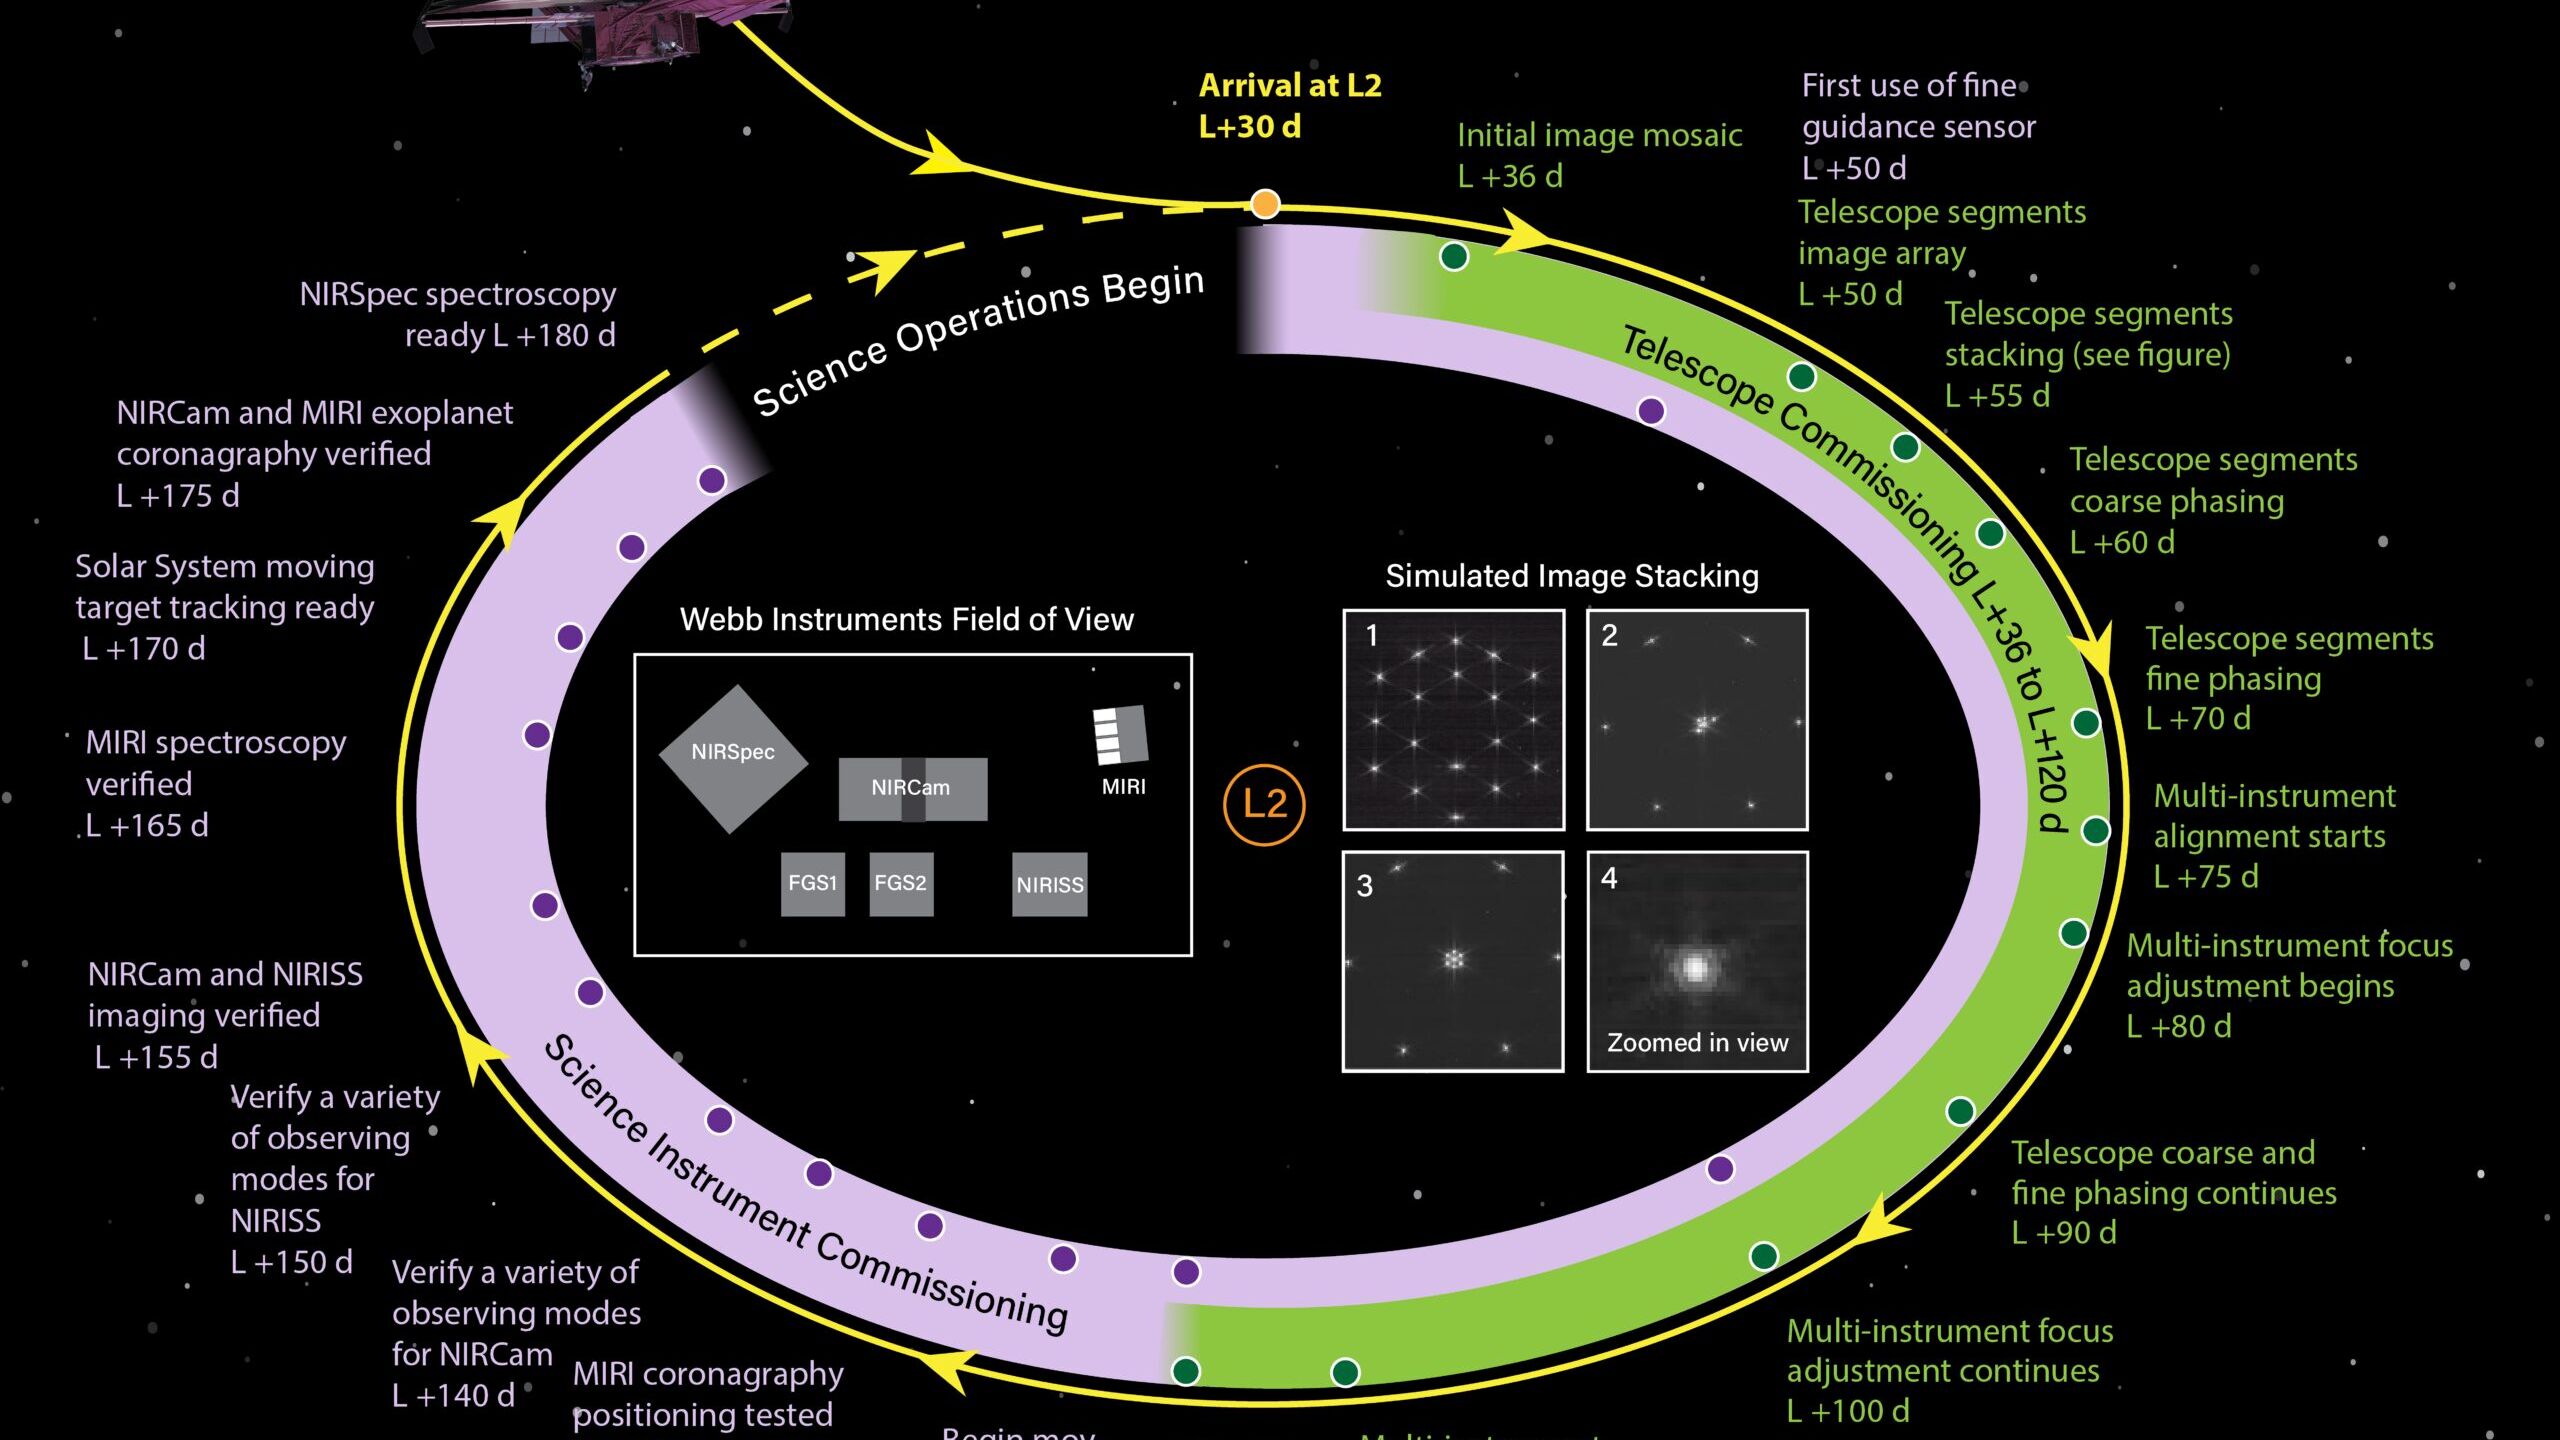 Il Commissioning del Telescopio Spaziale James Webb